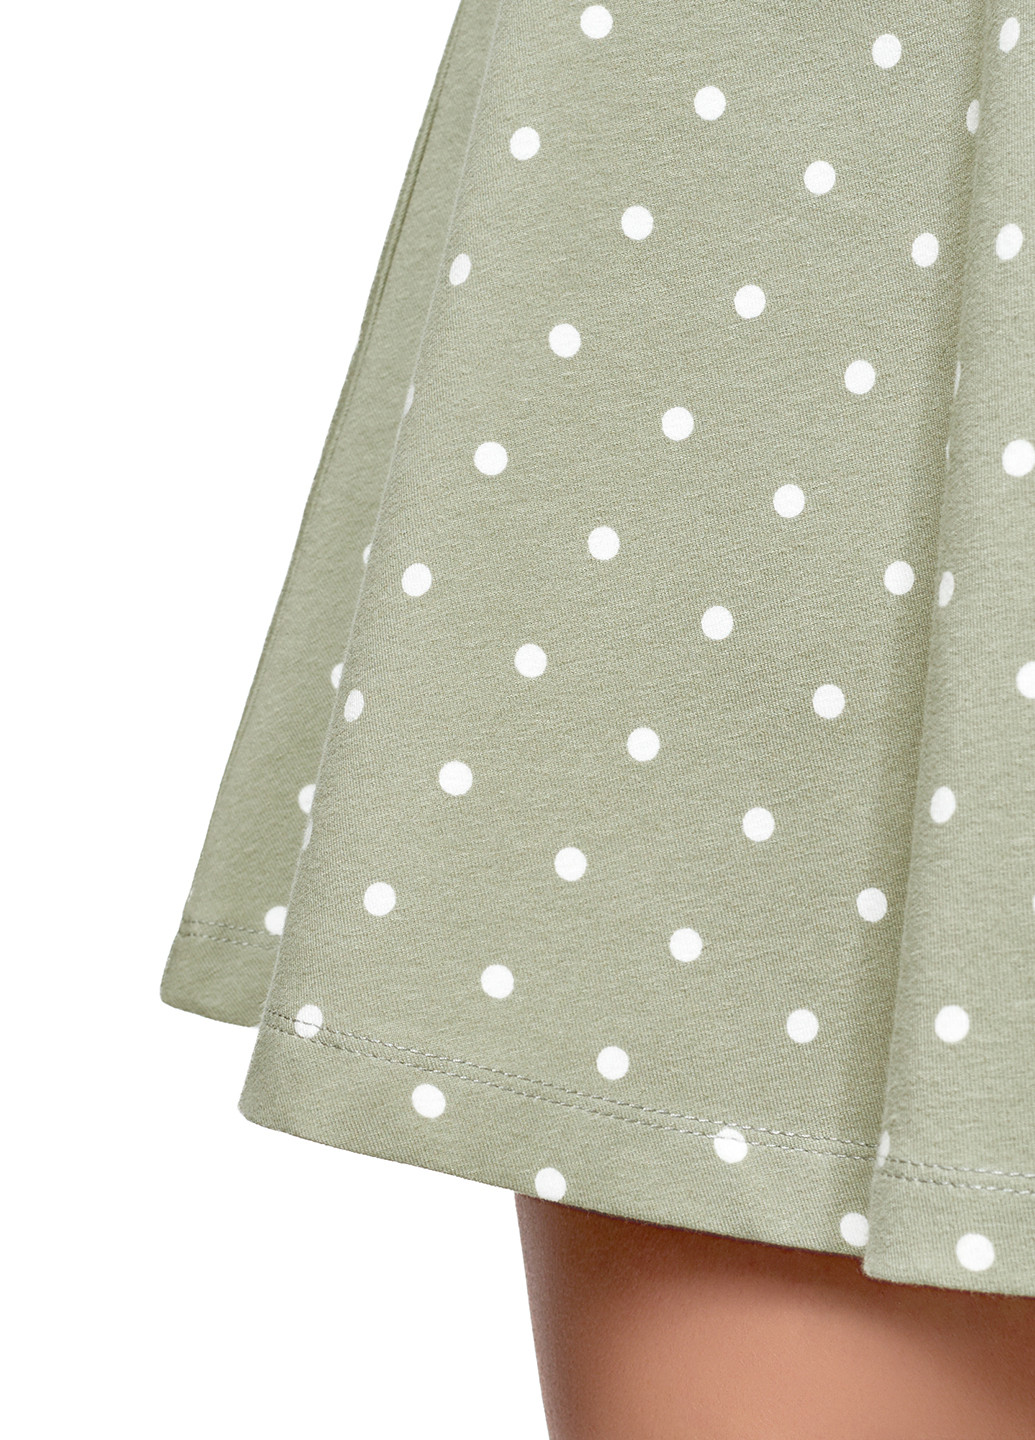 Бледно-зеленая кэжуал в горошек юбка Oodji клешированная-солнце